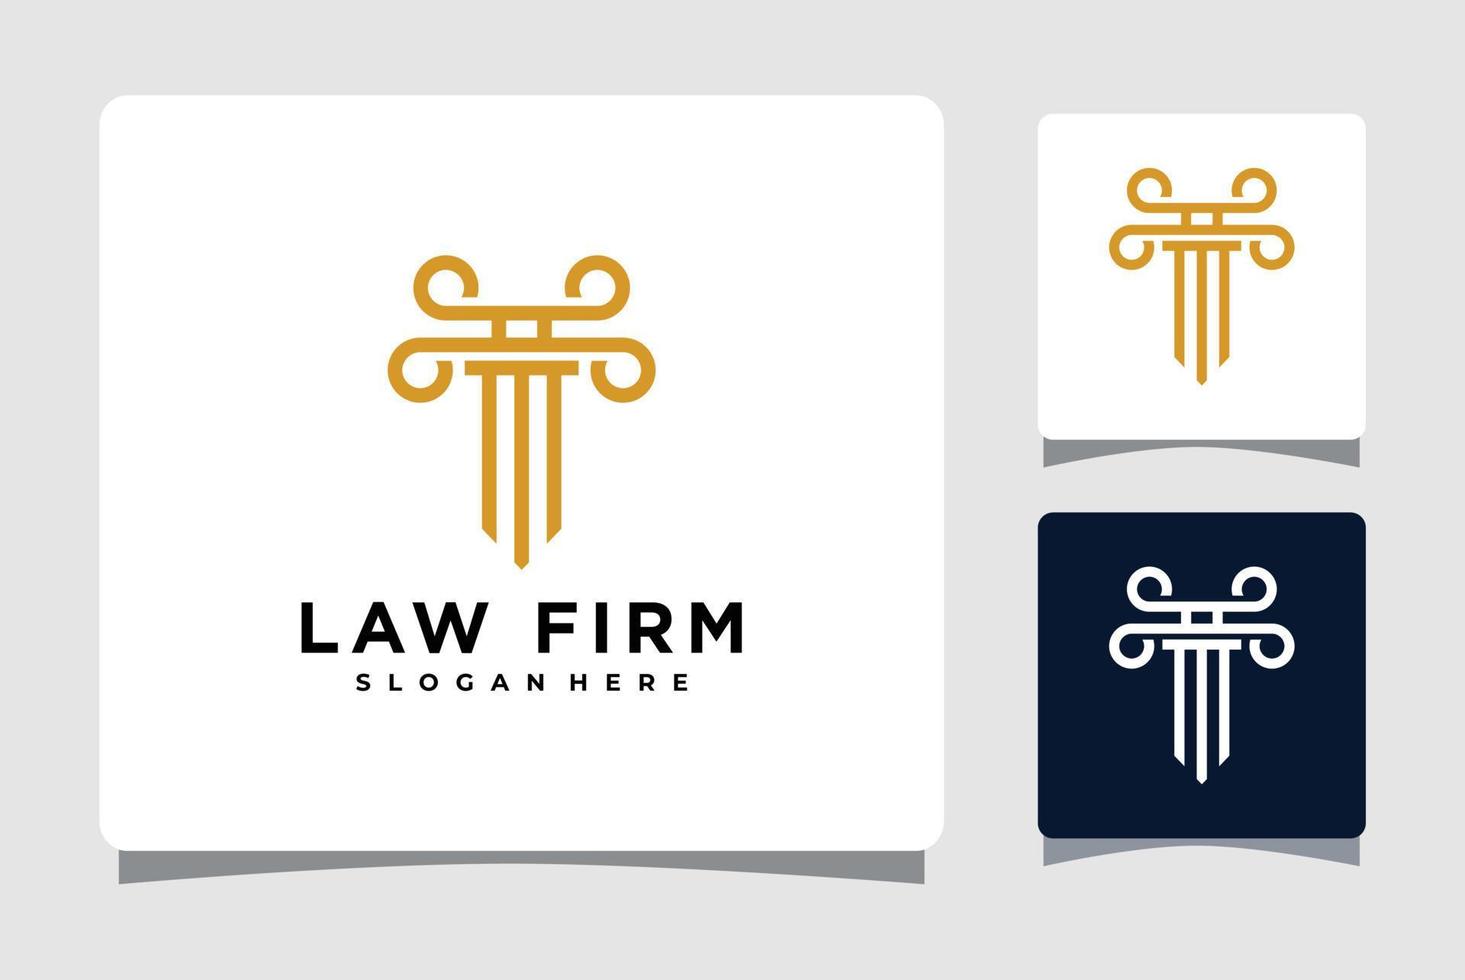 inspiração de design de modelo de logotipo de pilar de escritório de advocacia vetor